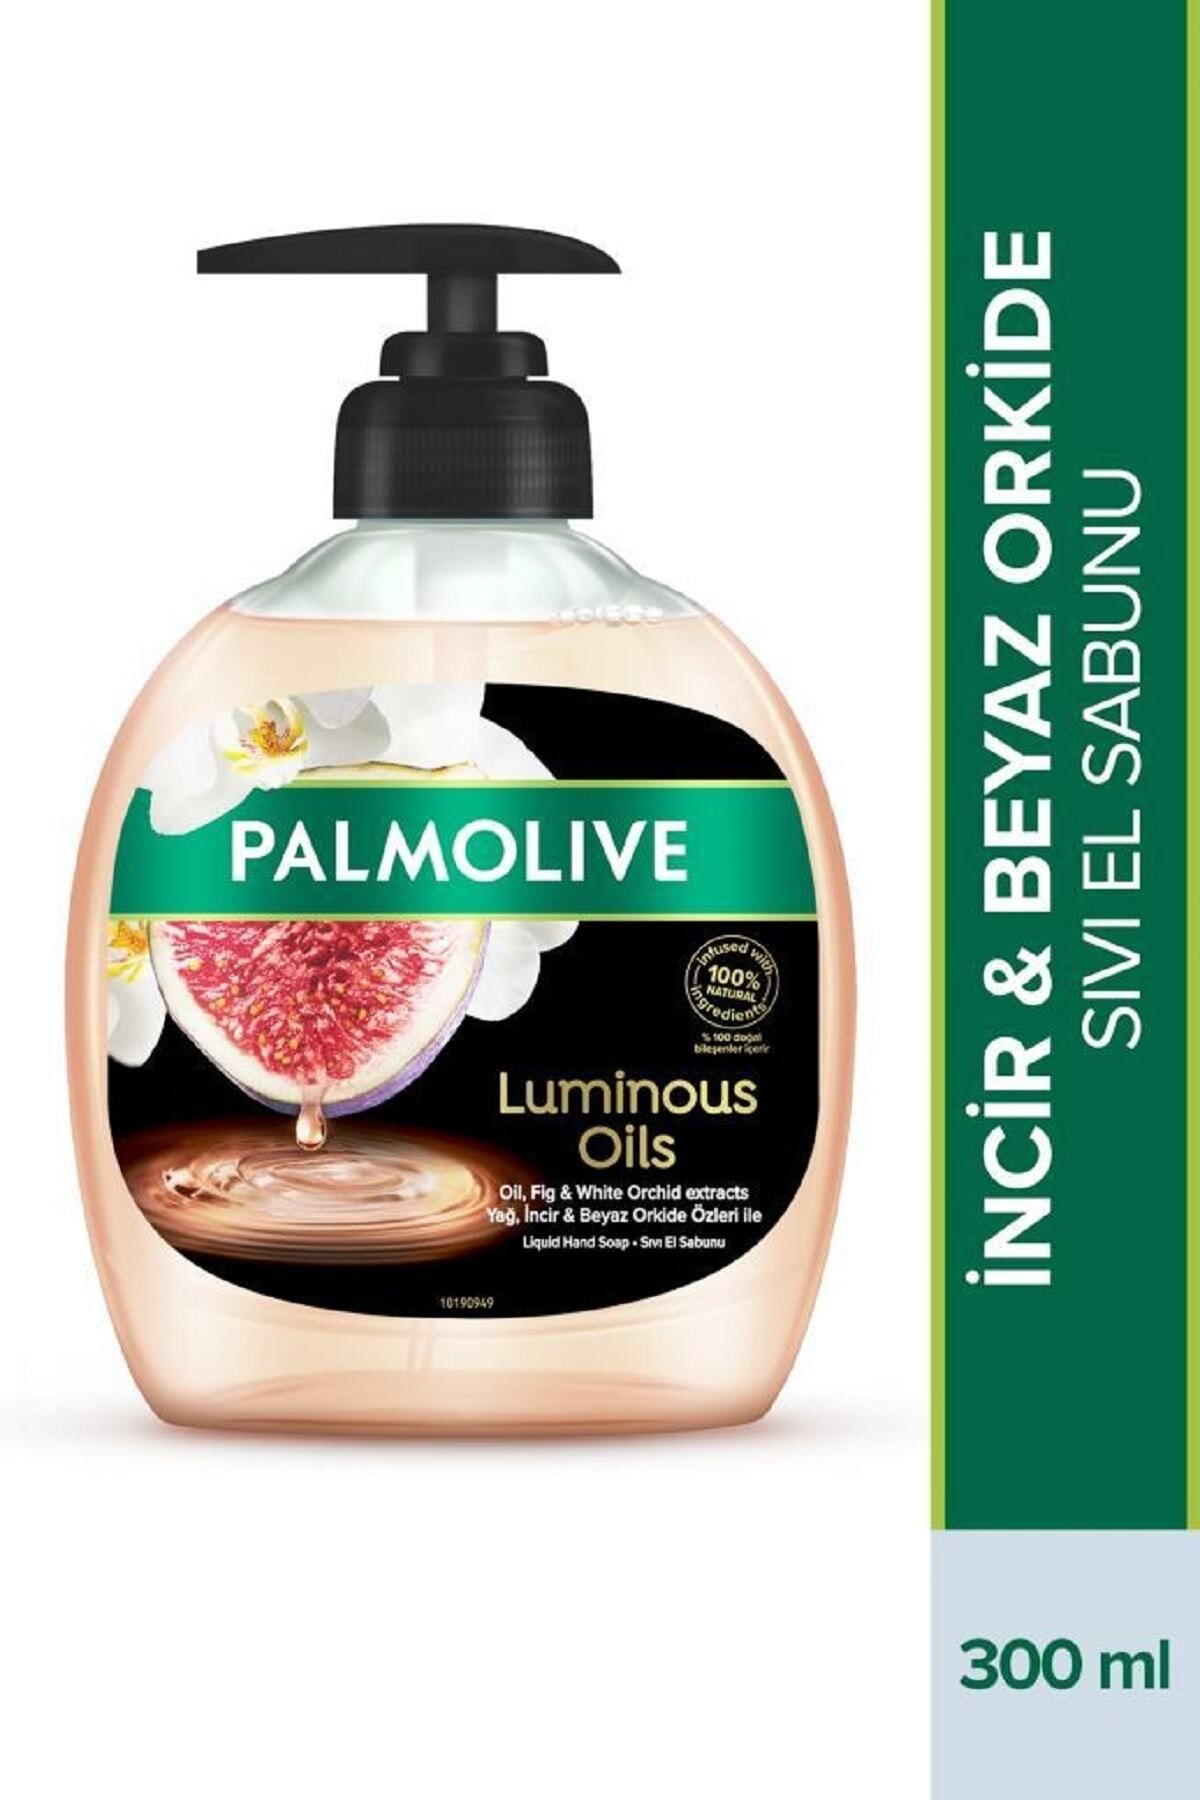 Palmolive Luminous Oils İncir & Beyaz Orkide Özleri Sıvı El Sabunu 300 ml